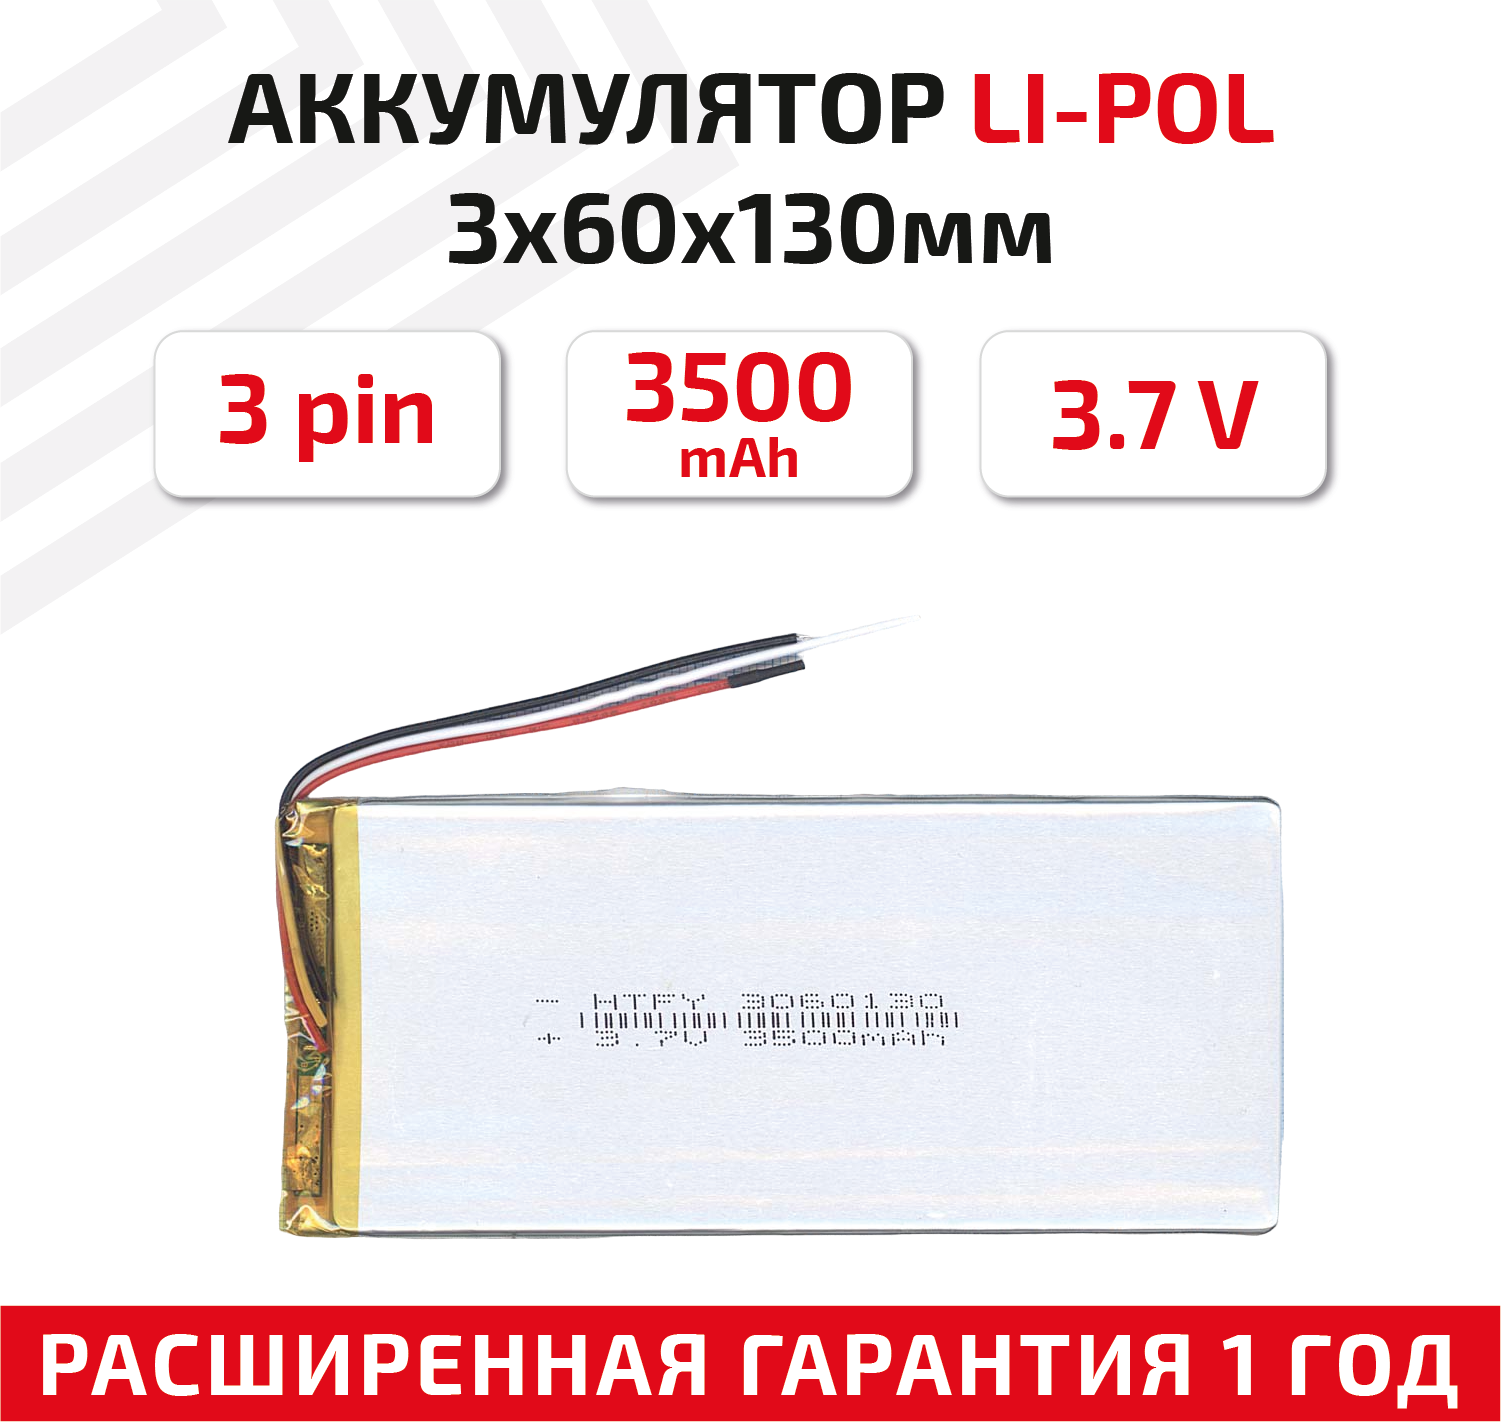 Универсальный аккумулятор (АКБ) для планшета, видеорегистратора и др, 3х60х130мм, 3500мАч, 3.7В, Li-Pol, 3-pin (на 3 провода)